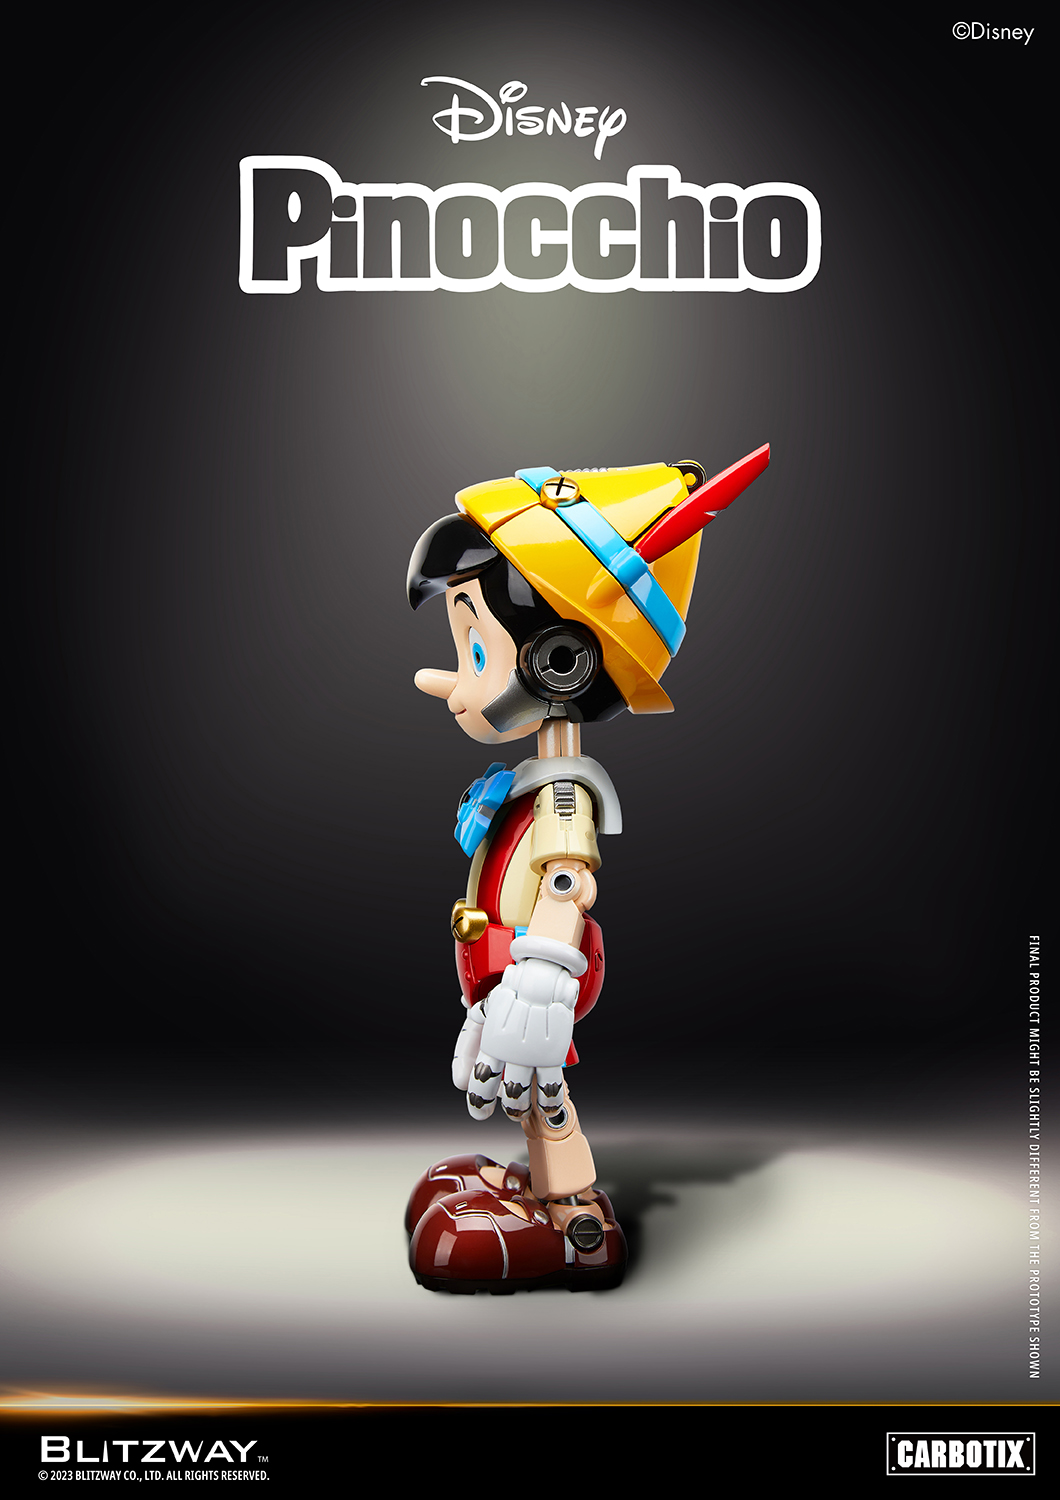 ディズニー「CARBOTIX ピノキオ」のフィギュア画像